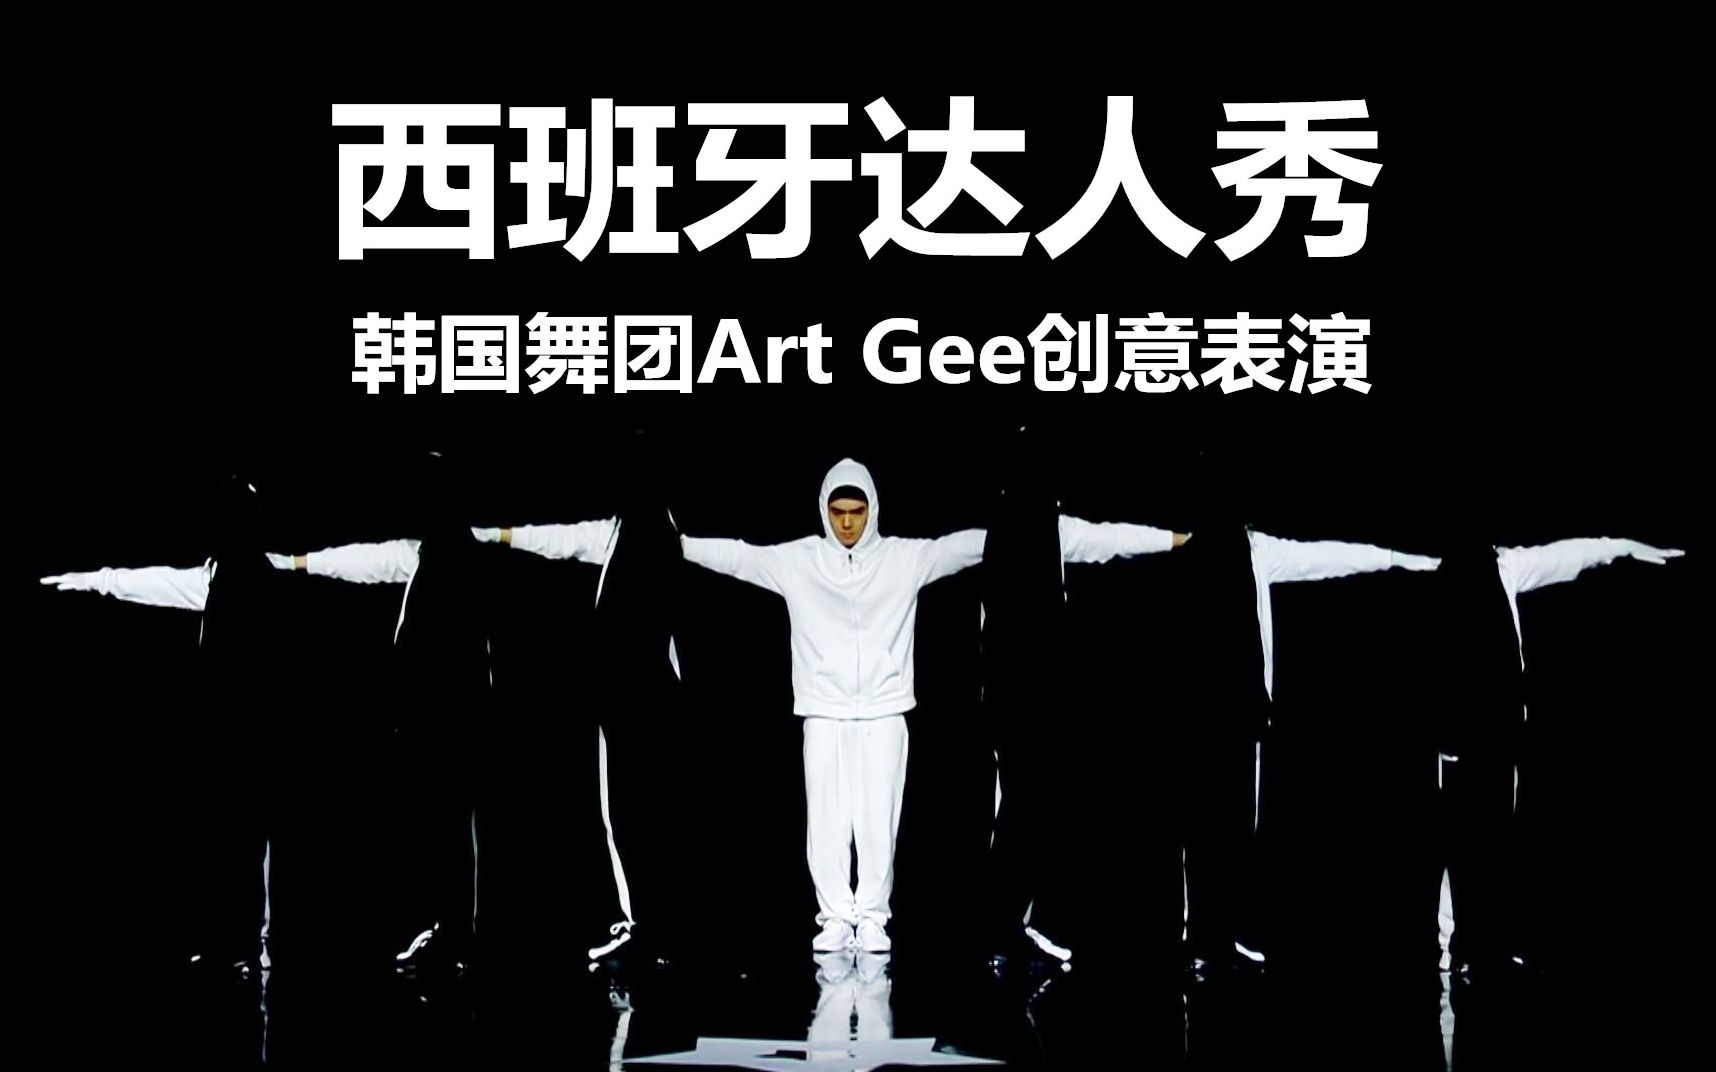 获得评委黄金按钮的韩国舞团Art Gee创意现场表演cut！这难道是'黑白绝'？！